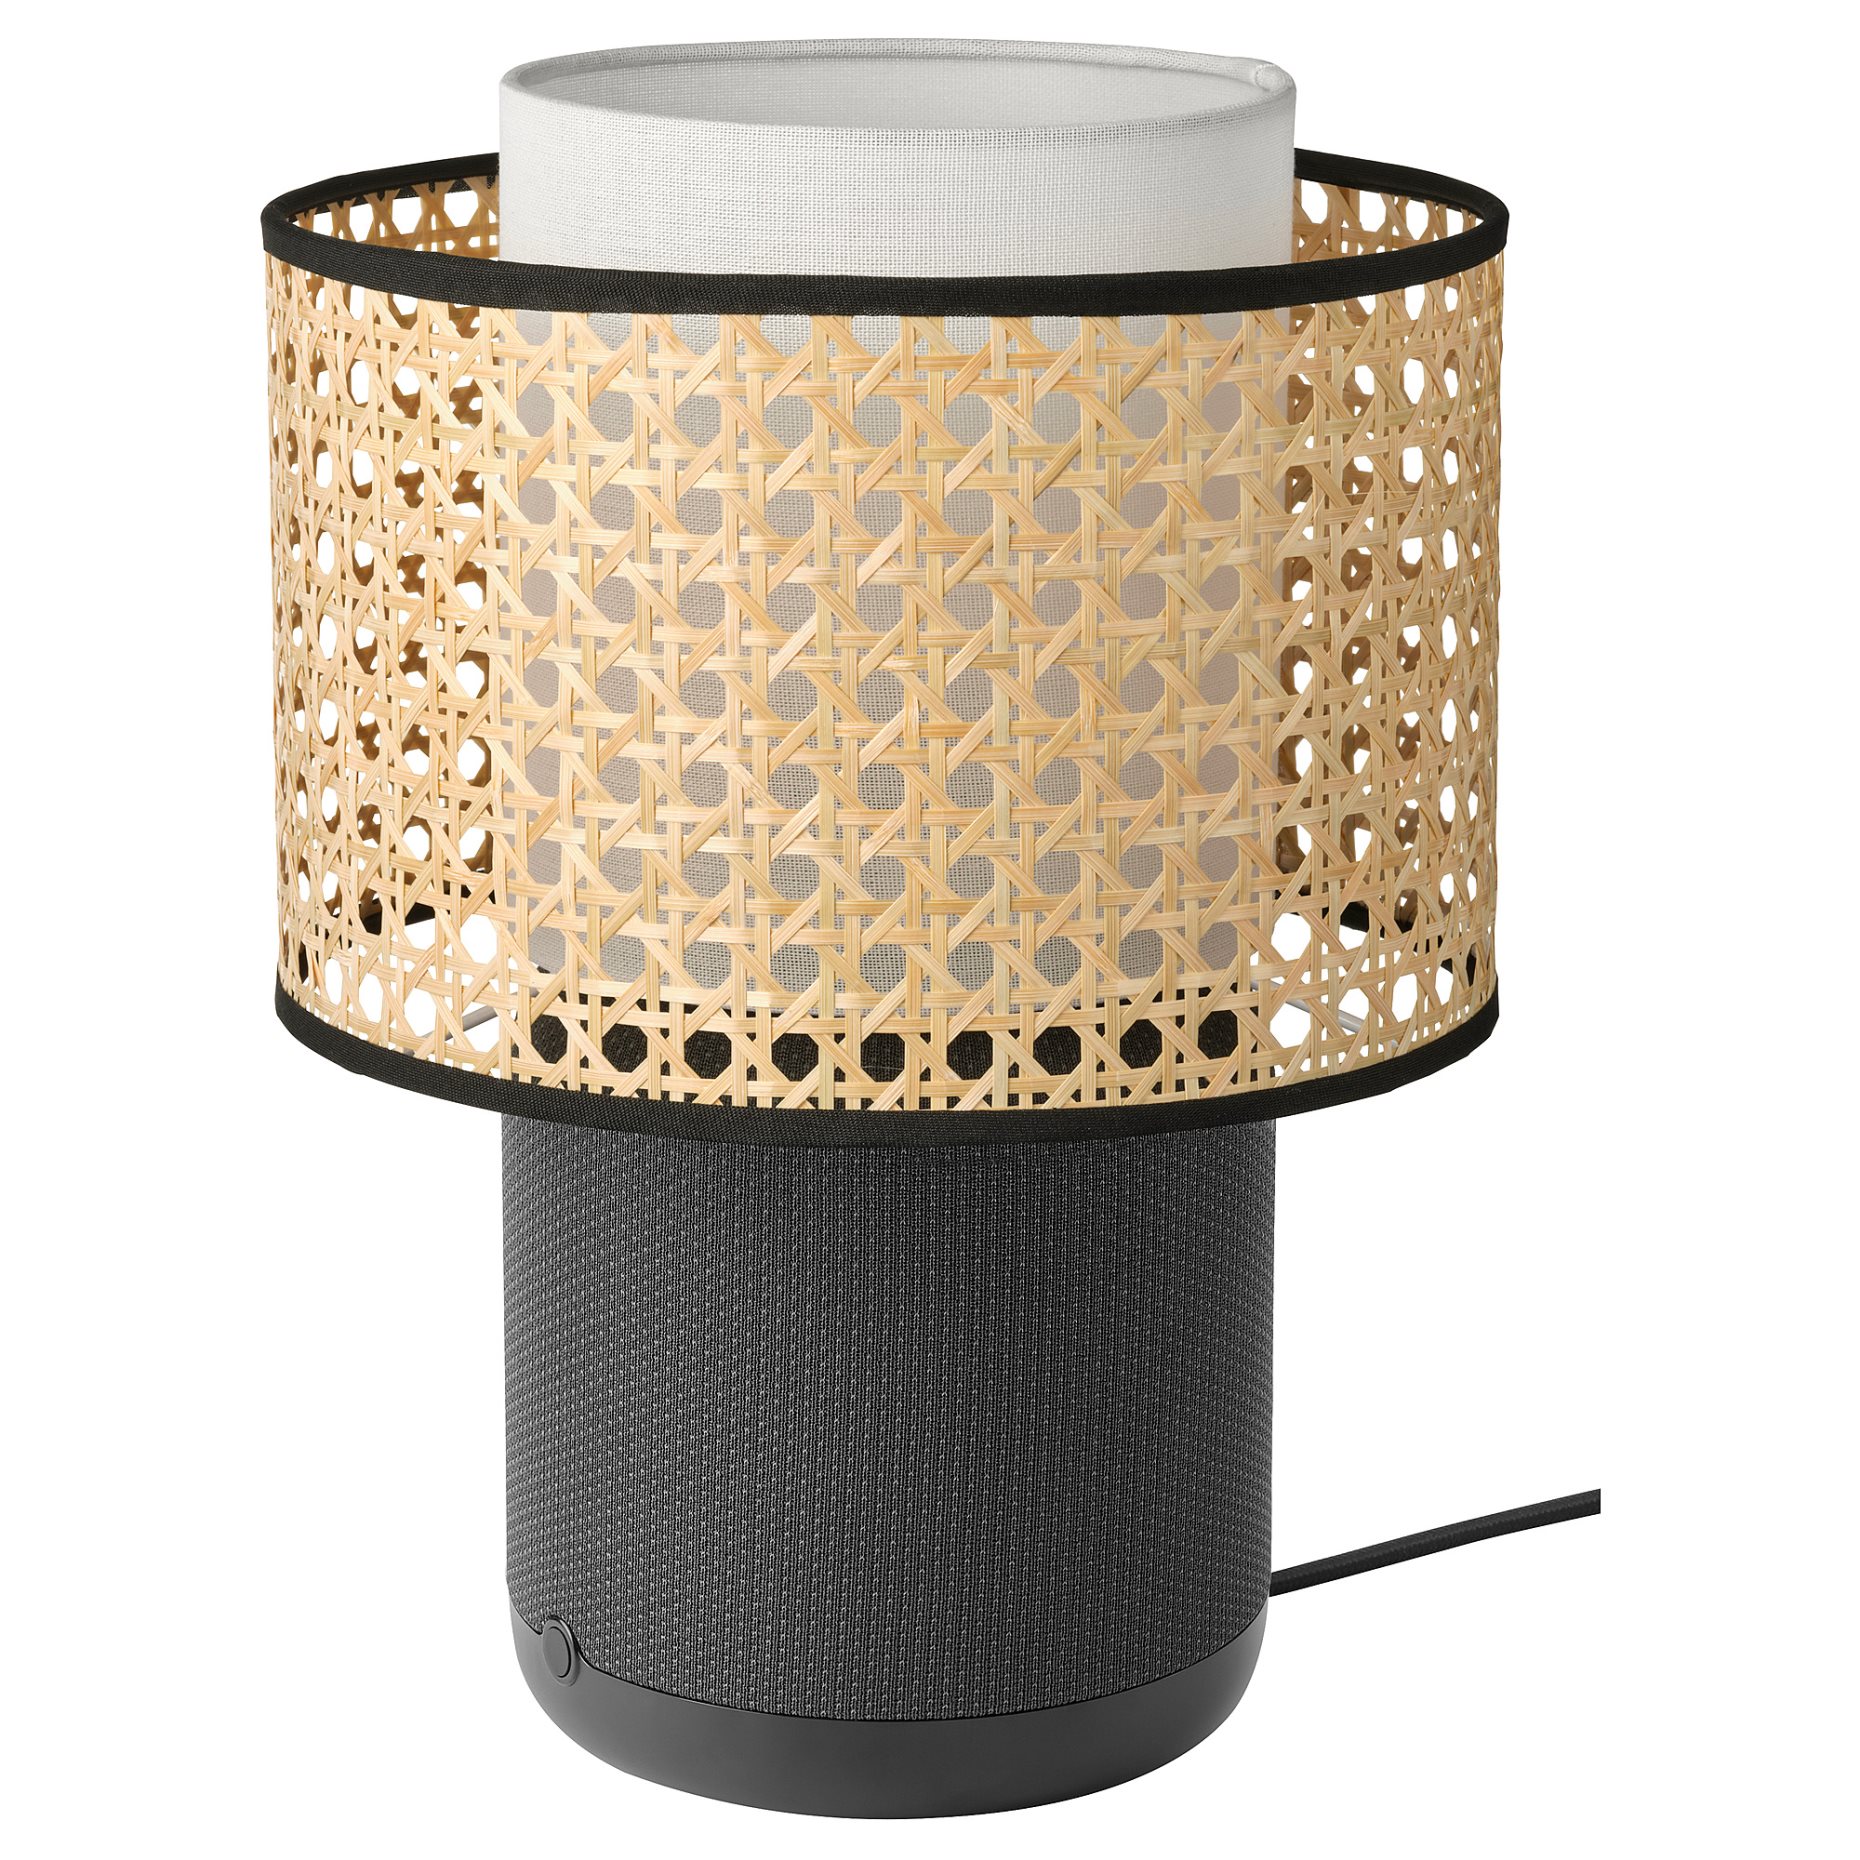 SYMFONISK, shade for speaker lamp base, 905.288.51